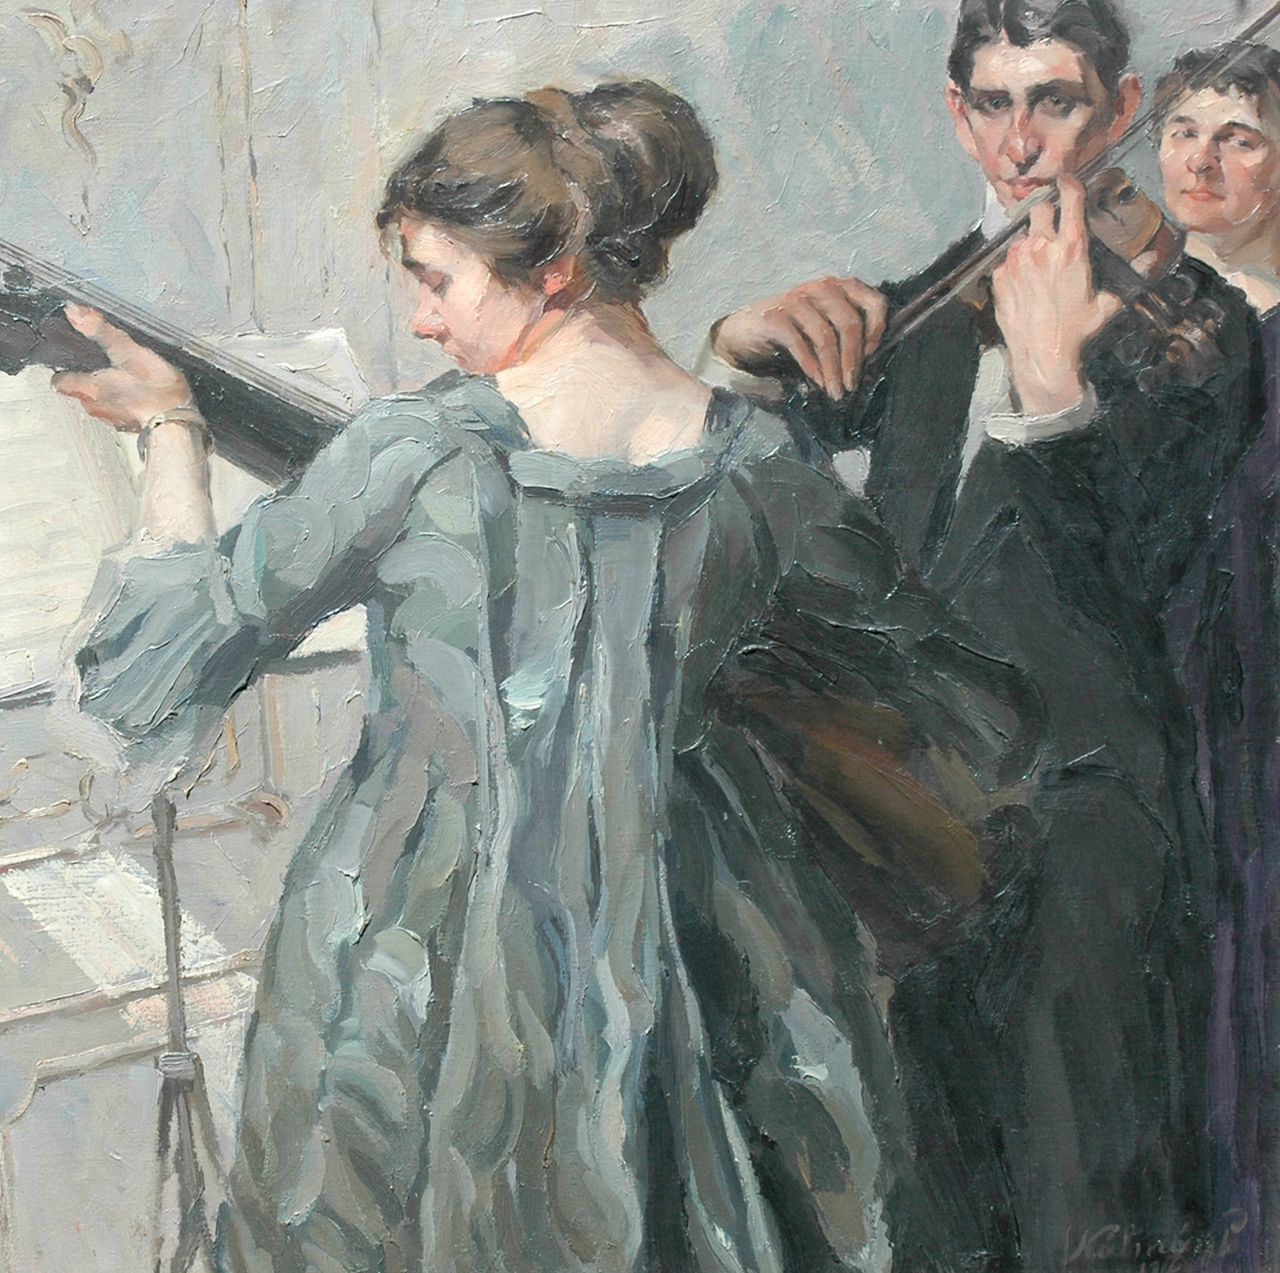 Kálmán P.  | Péter Kálmán, The duet, oil on canvas 98.6 x 98.9 cm, signed l.r. and dated 1912